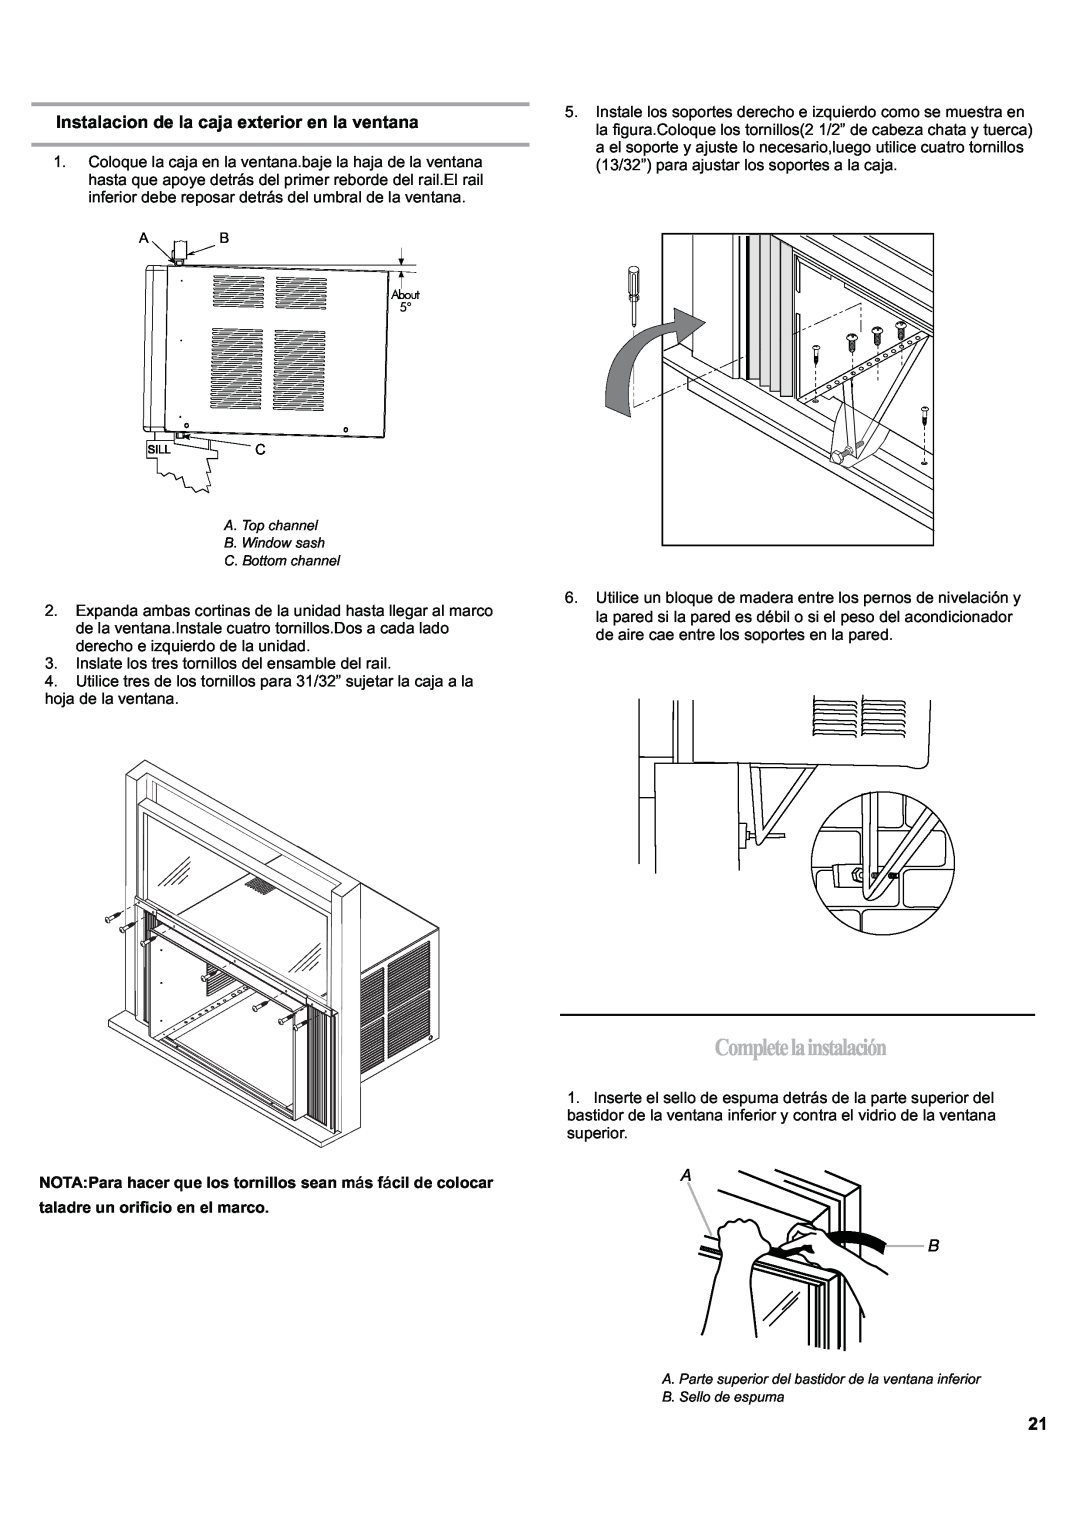 Haier ESA424J-L manual Completelainstalación, Instalacion de la caja exterior en la ventana 